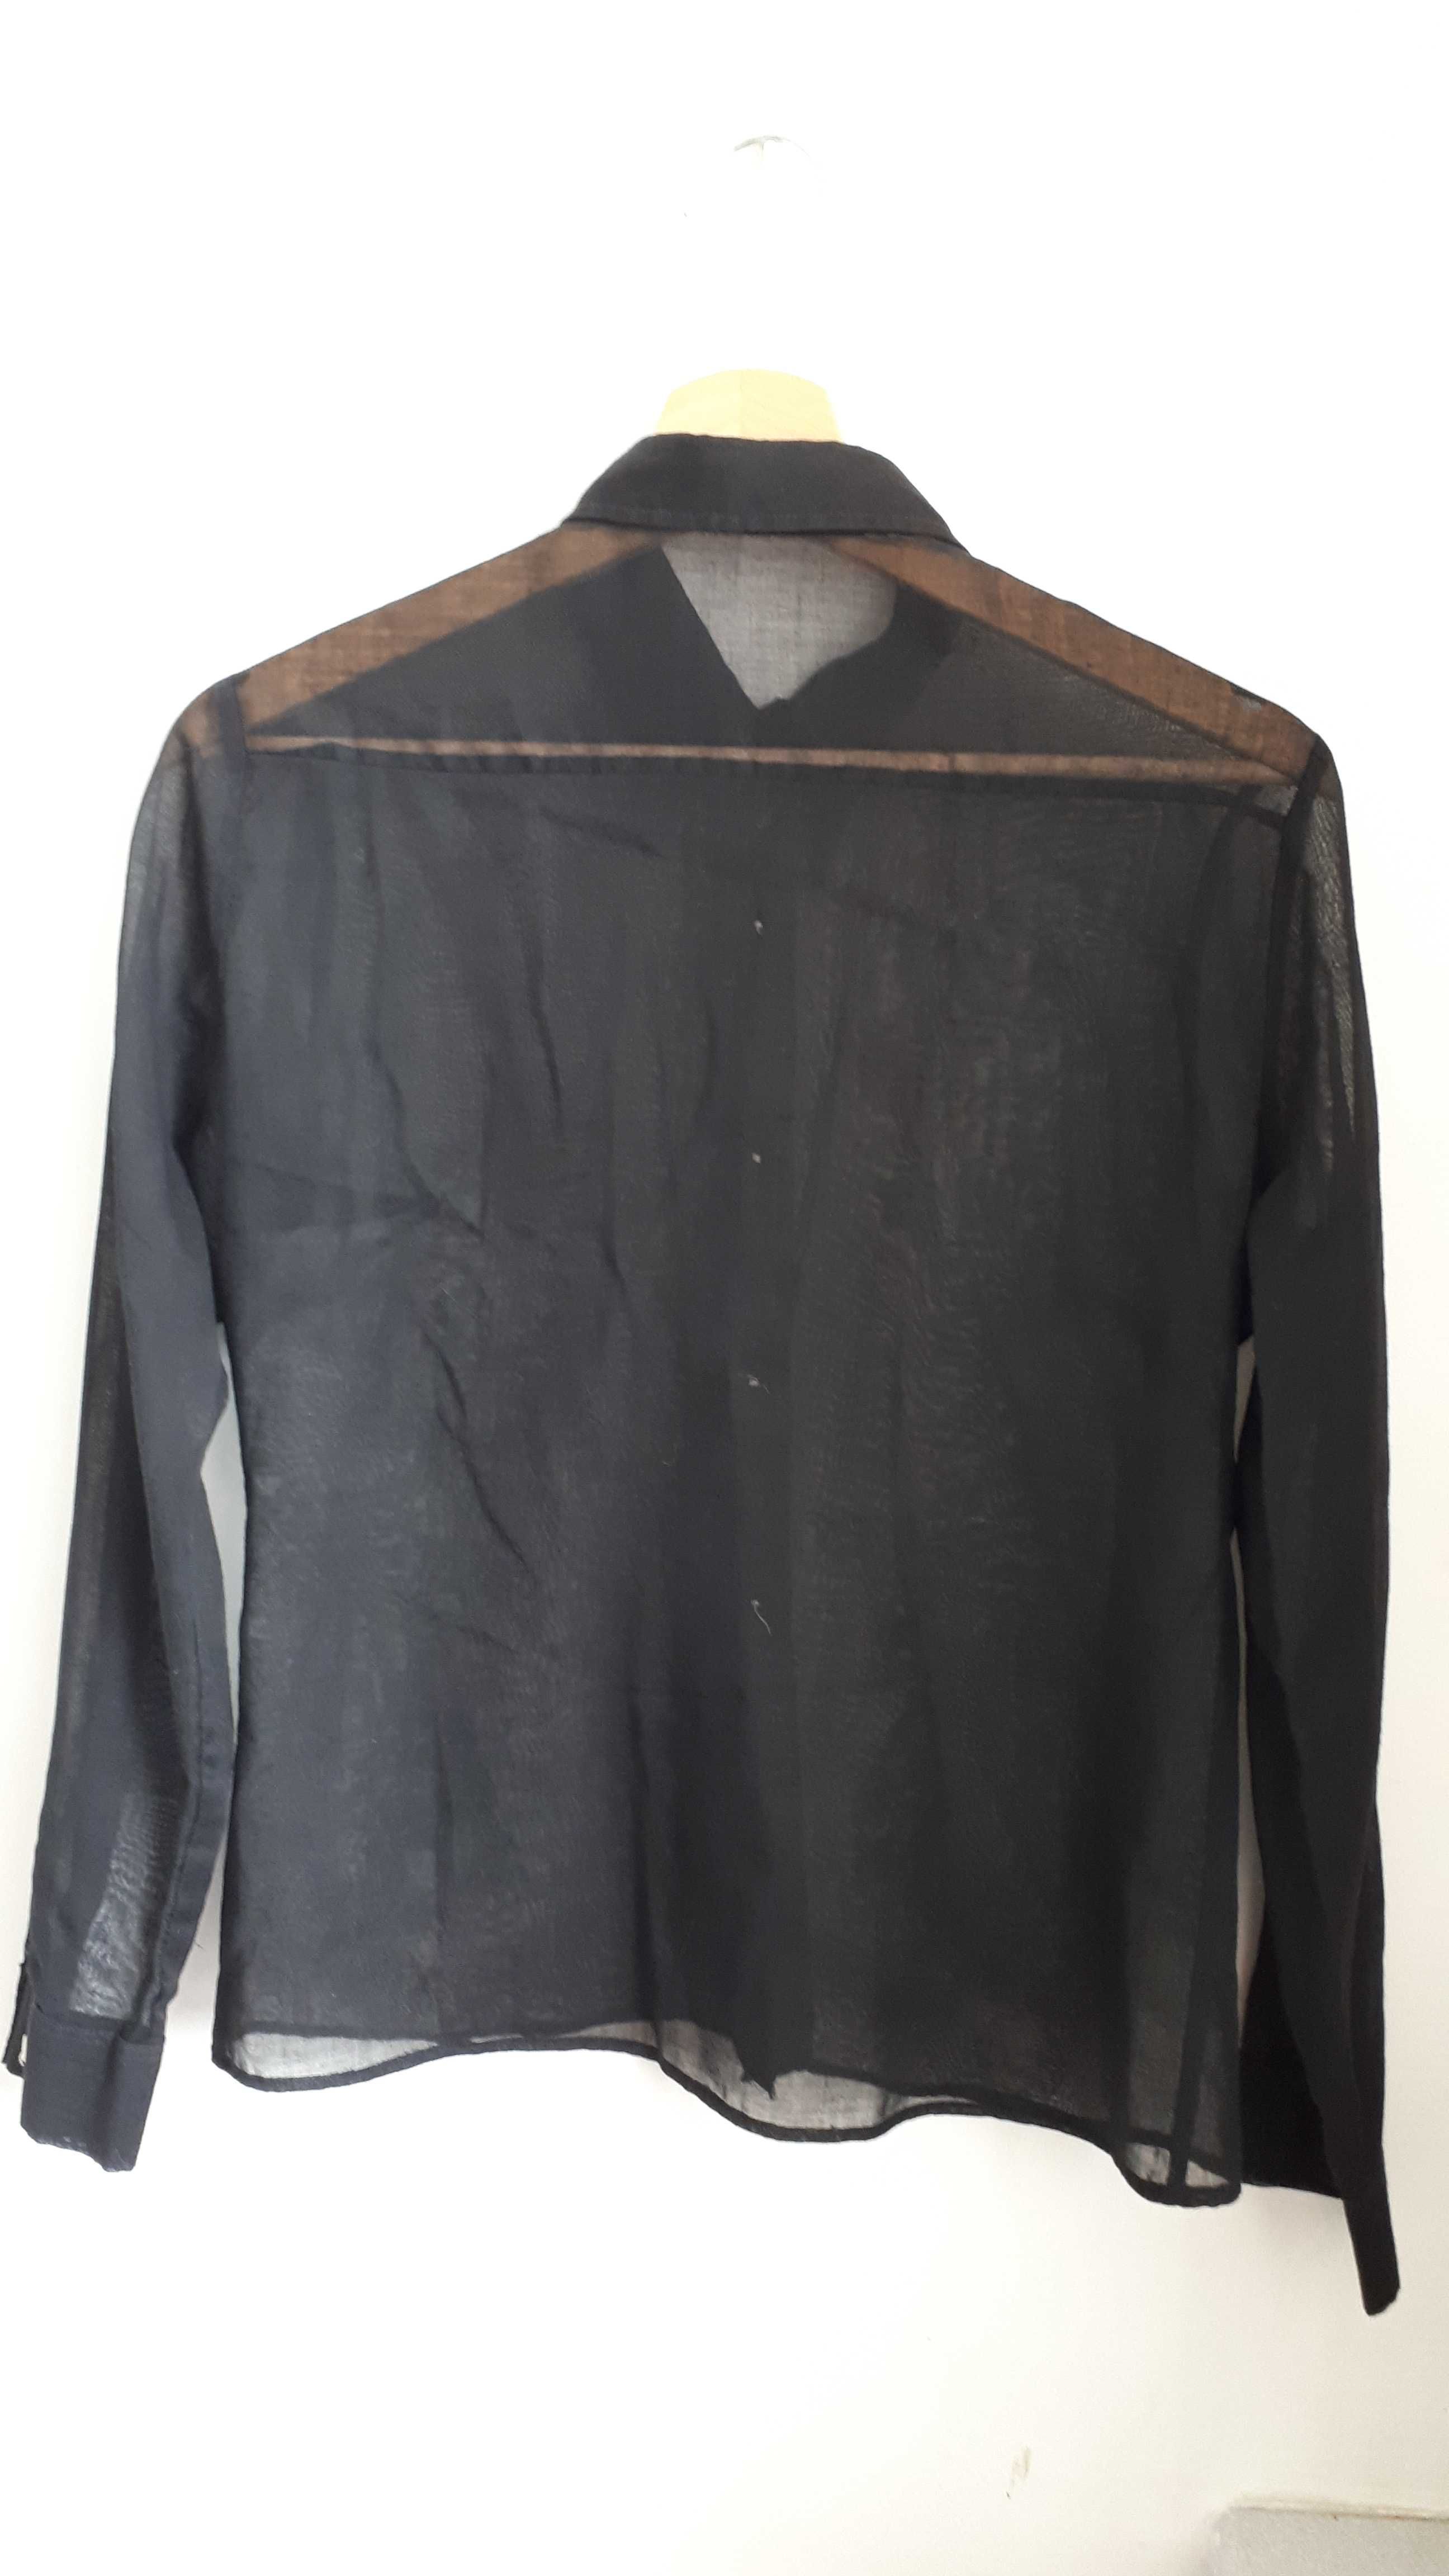 Cieniutka, czarna koszula z bawełny,H&M, rozmiar M